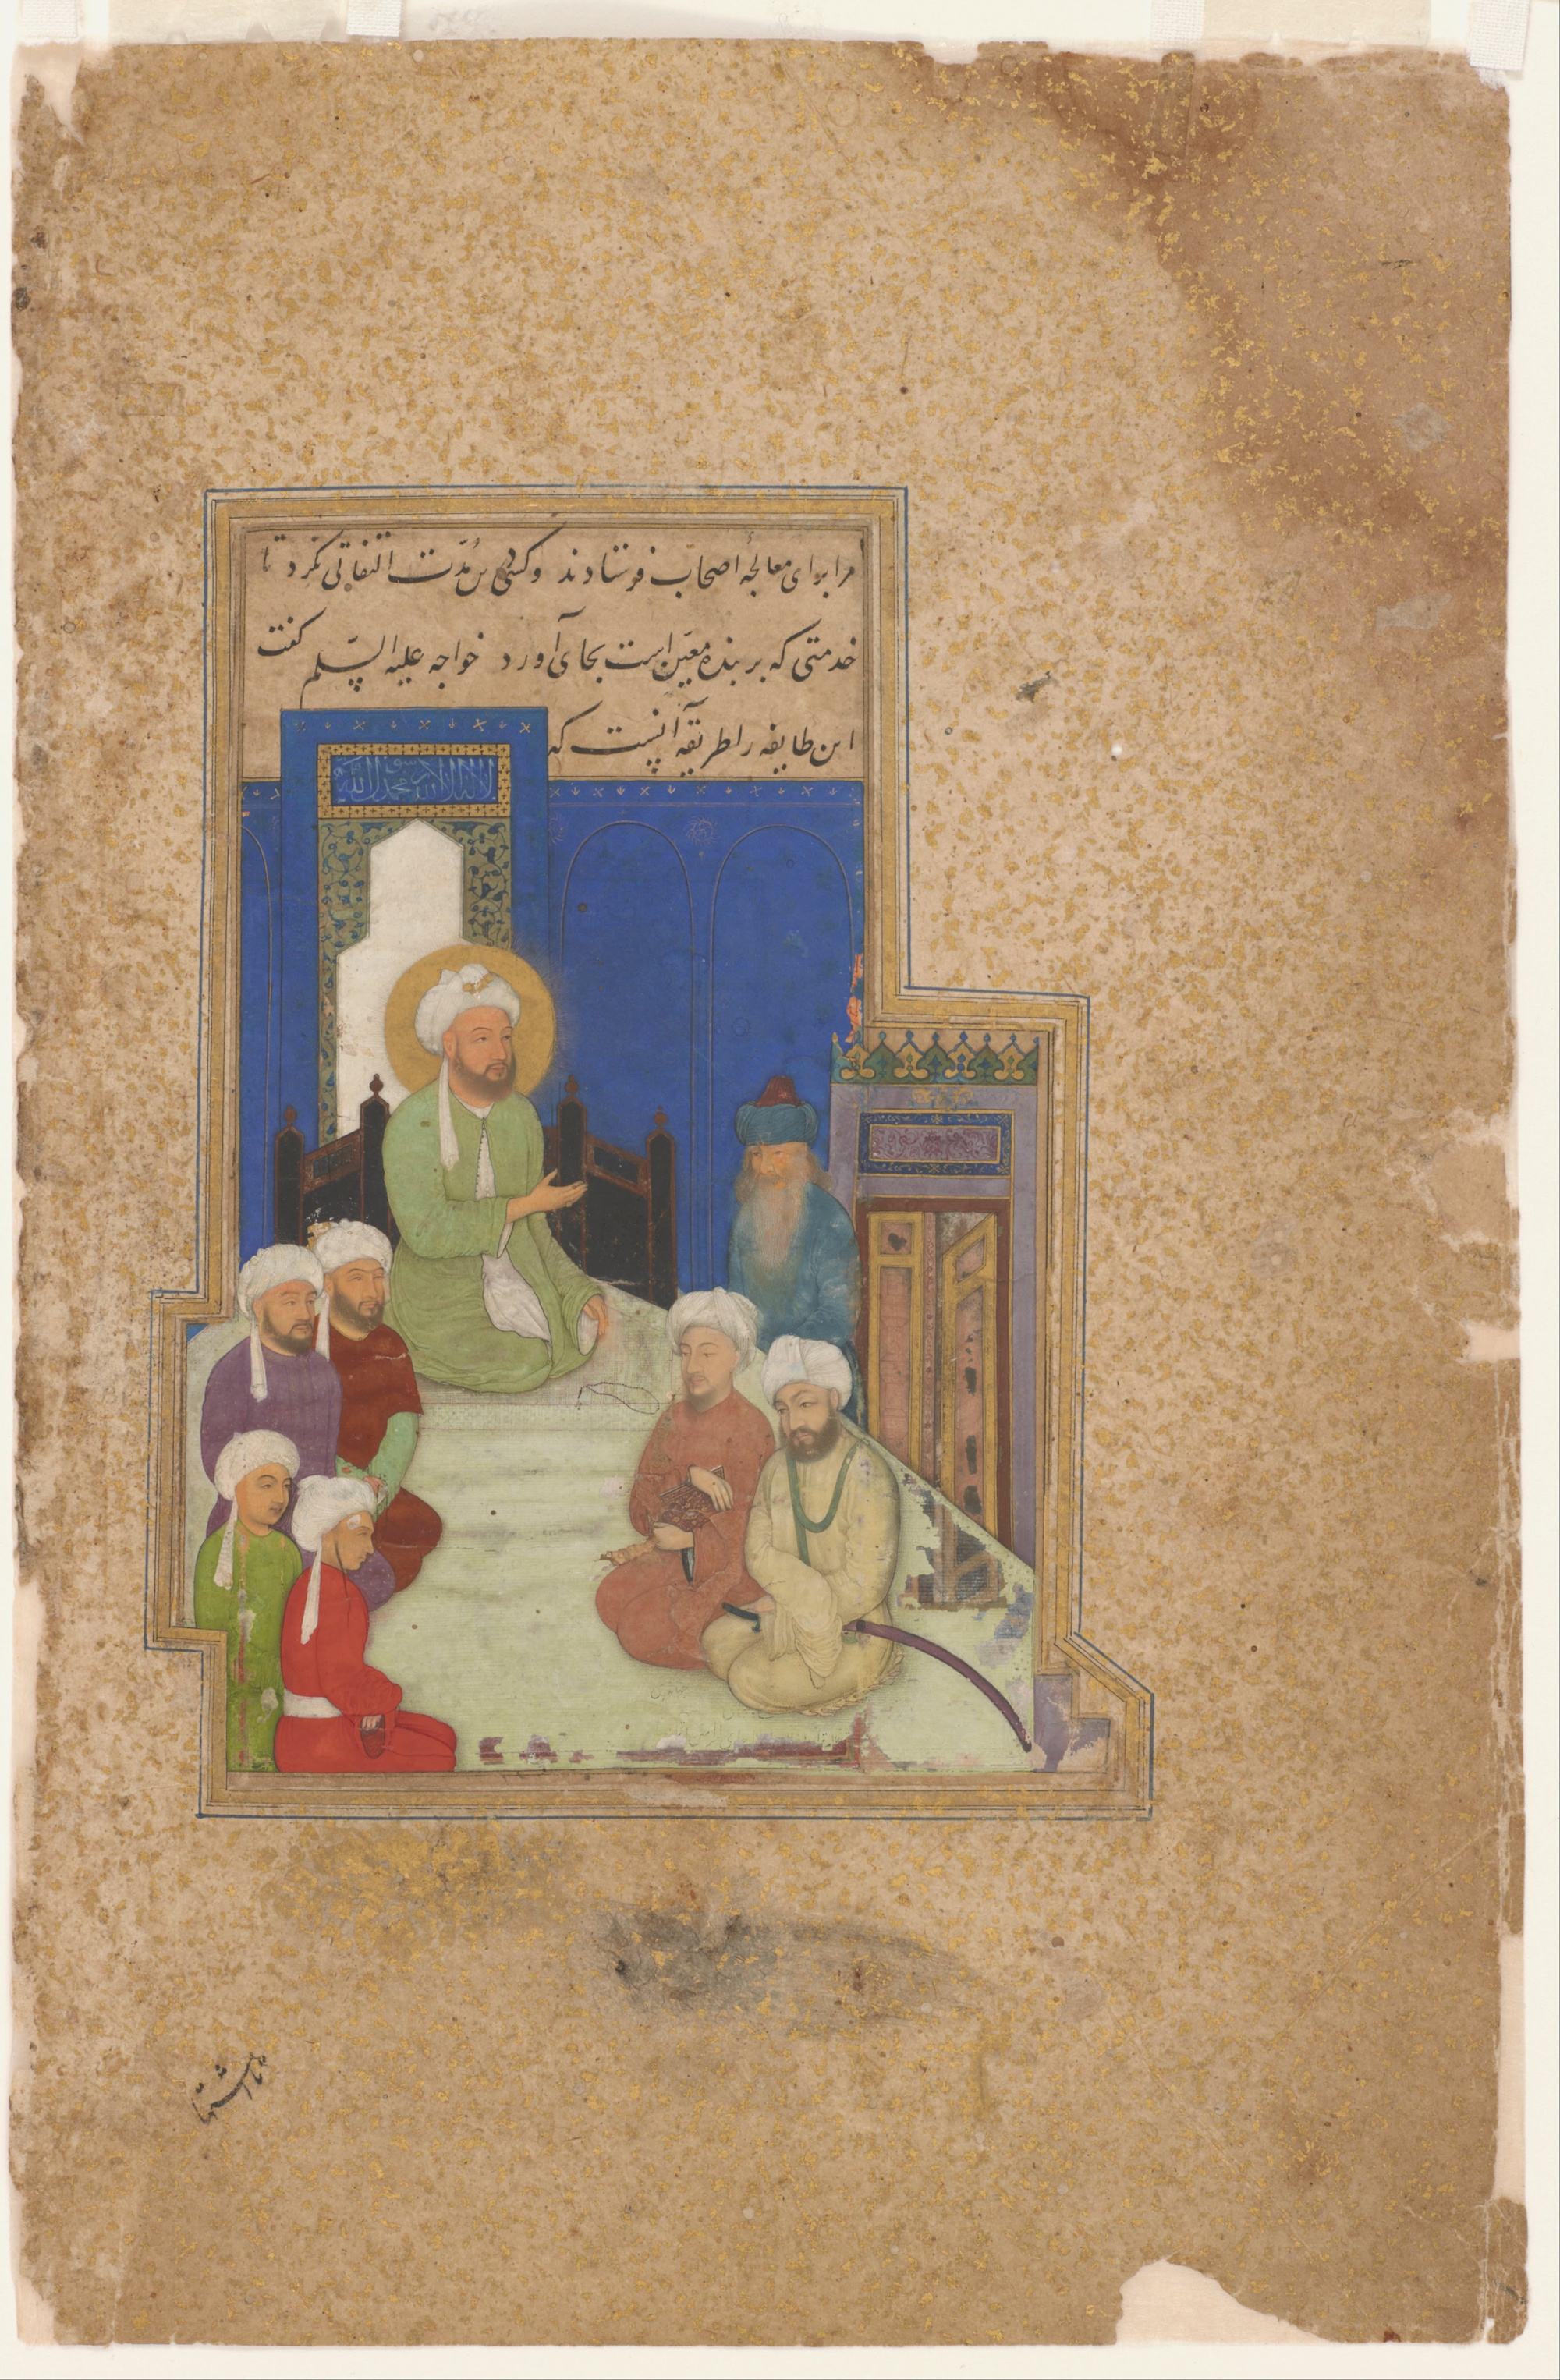 Sultan Ali Mashhadi - 1453 - 1520